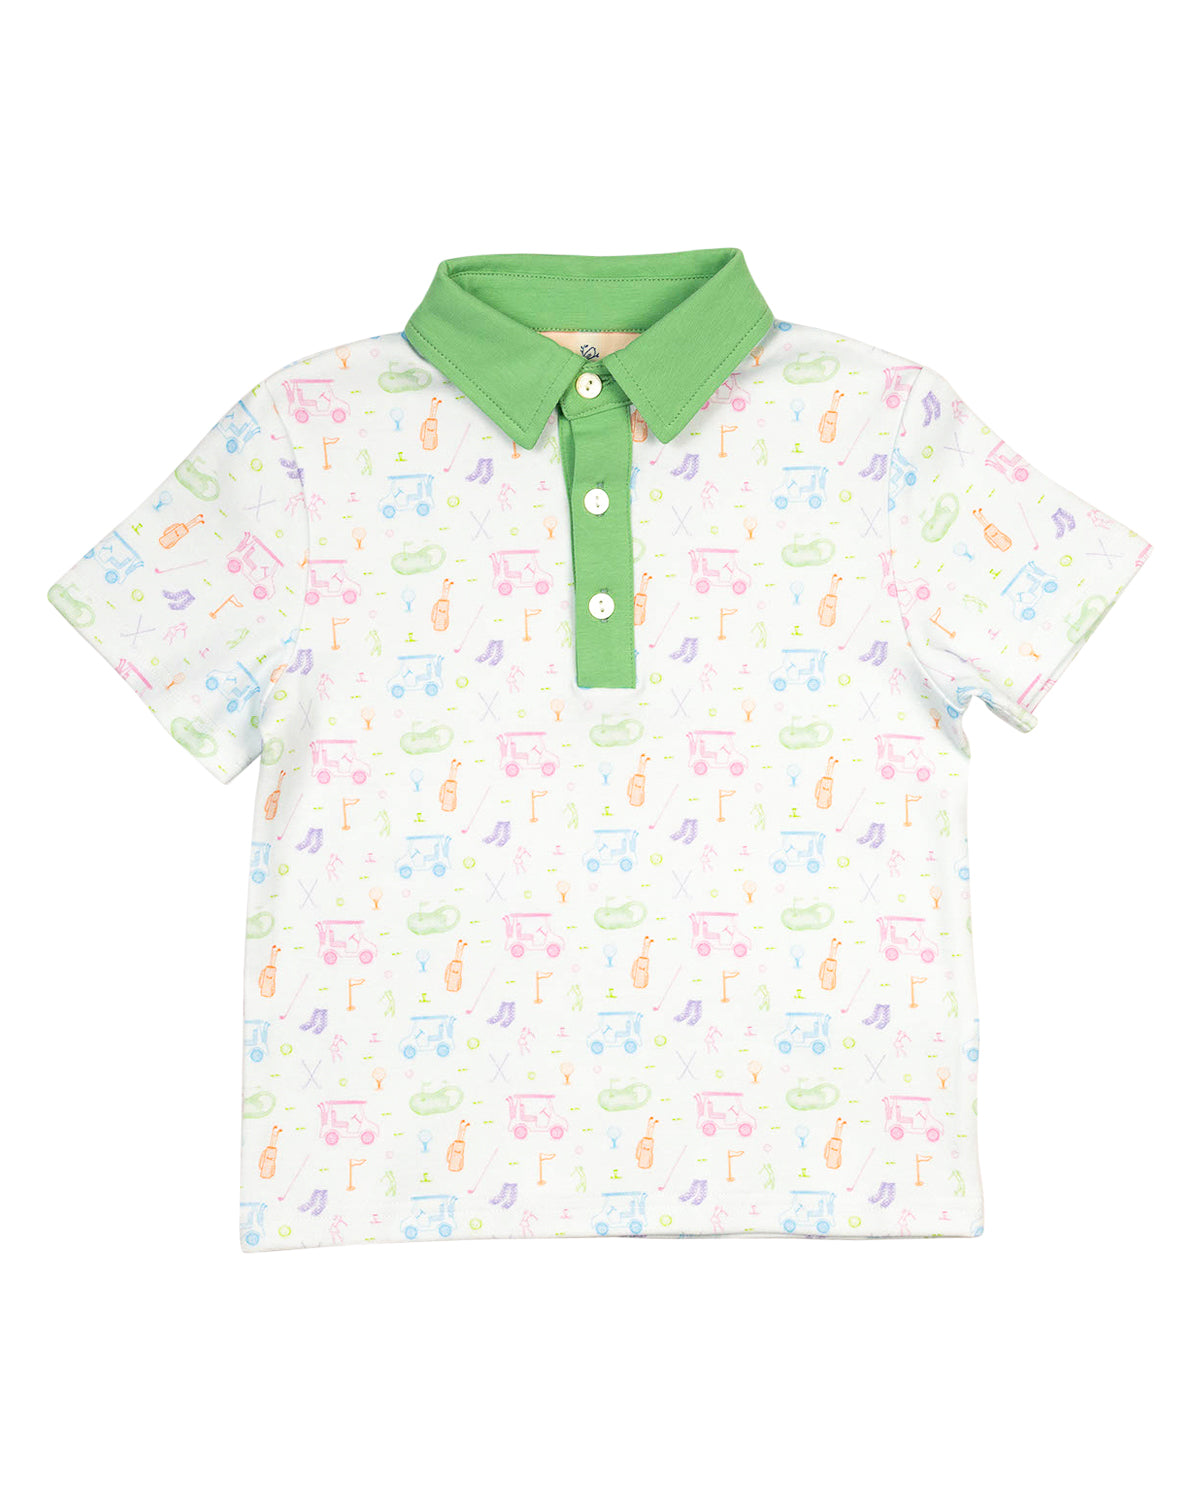 Fairway Fun Golf Print Knit Collared Shirt